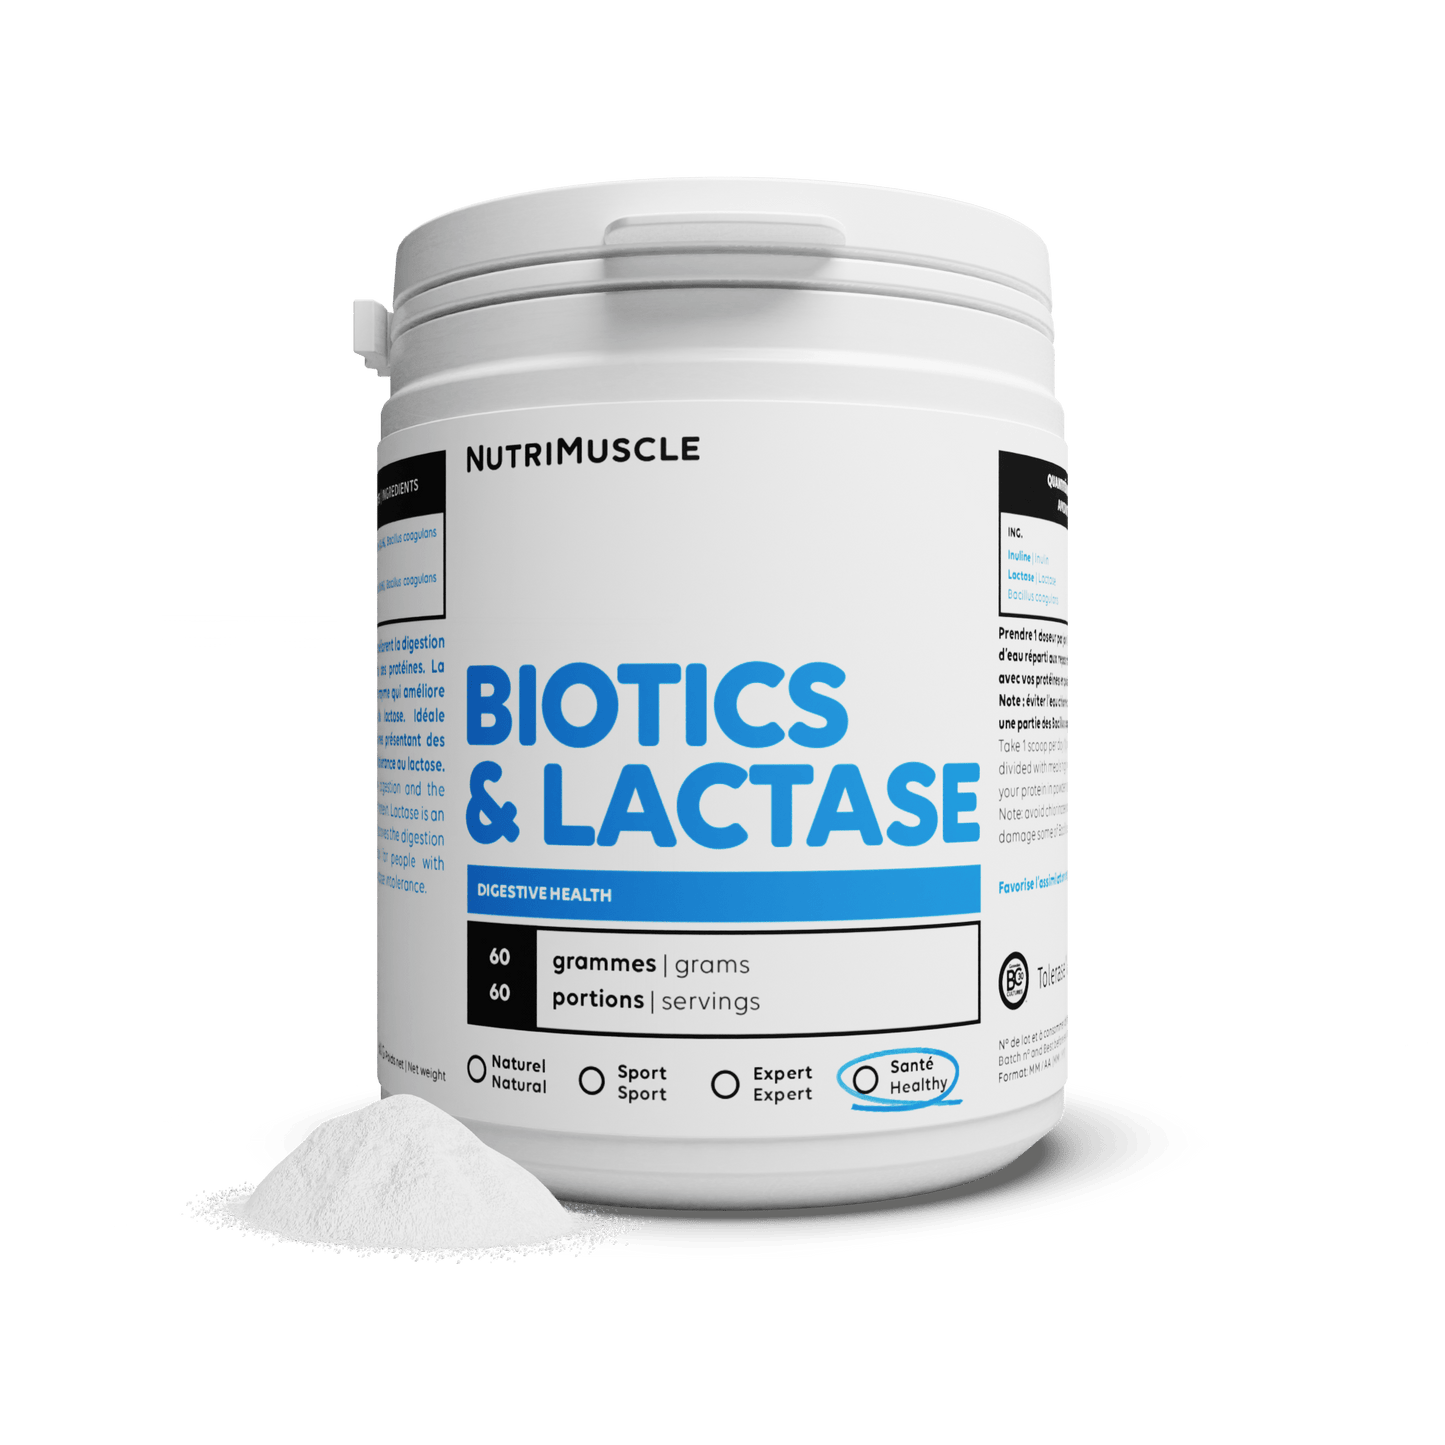 Nutrimuscle Nutriments Avec lactase / 60 g Biotiques